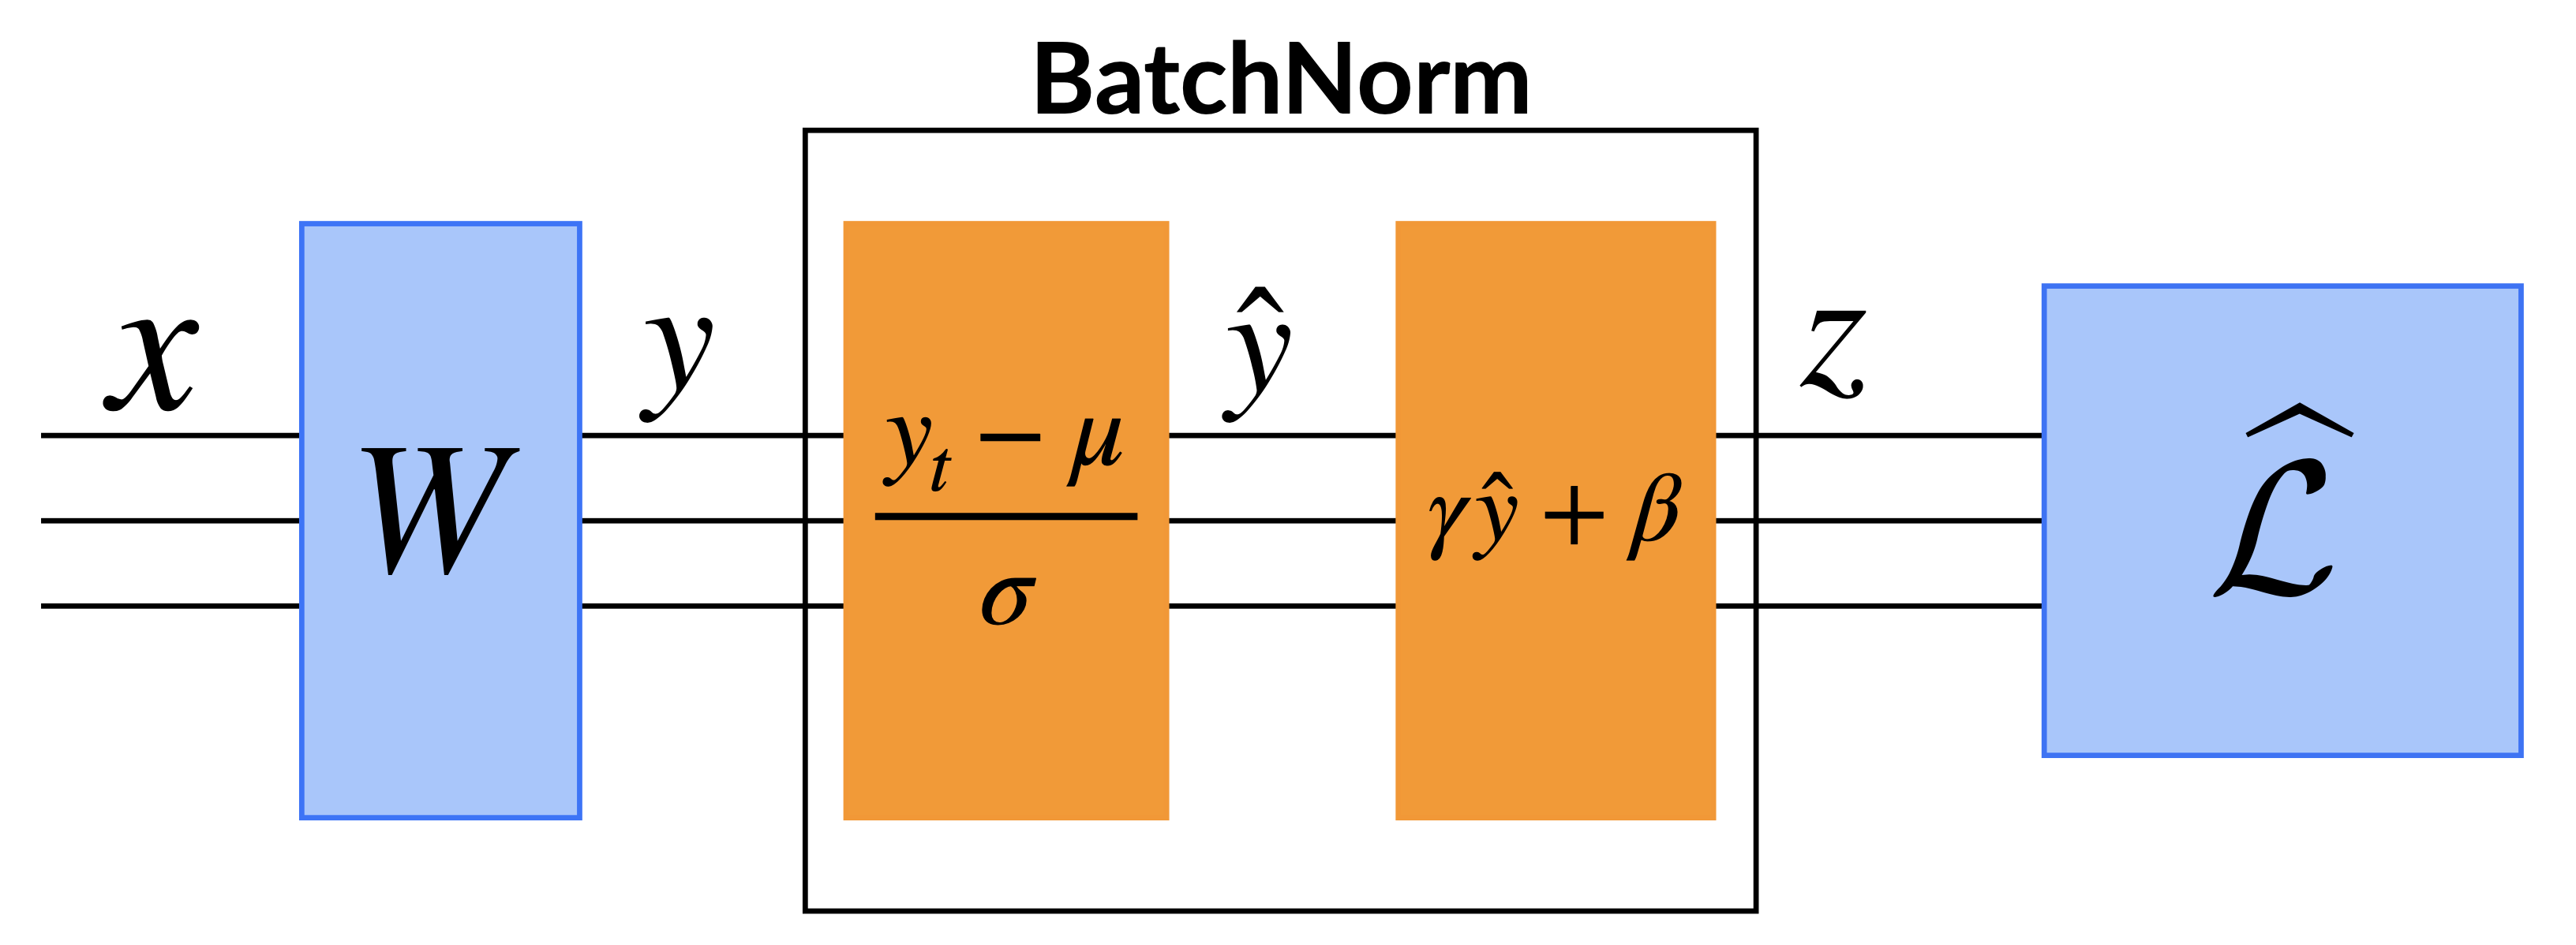 bn_schematic